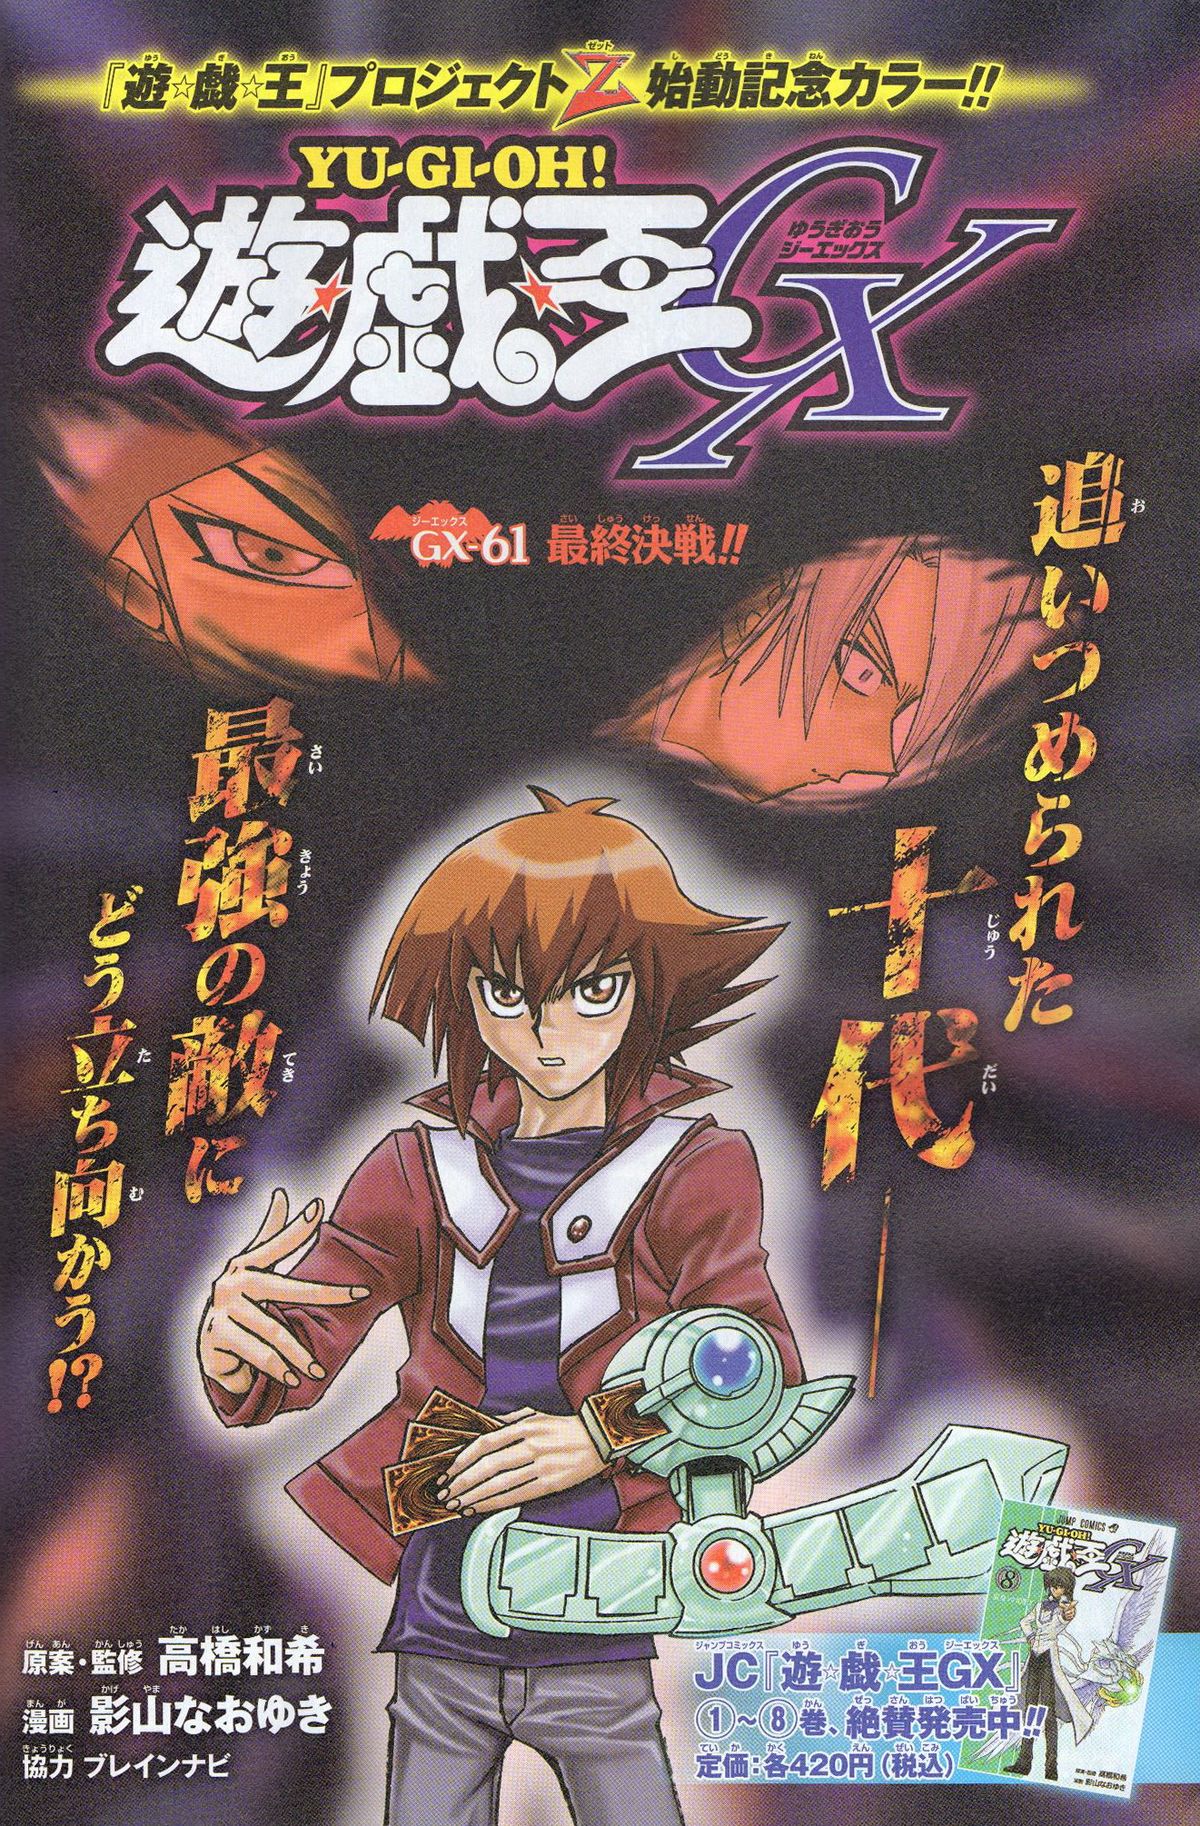 Yu-Gi-Oh! GX - Chapter SP1 - Yugipedia - Yu-Gi-Oh! wiki